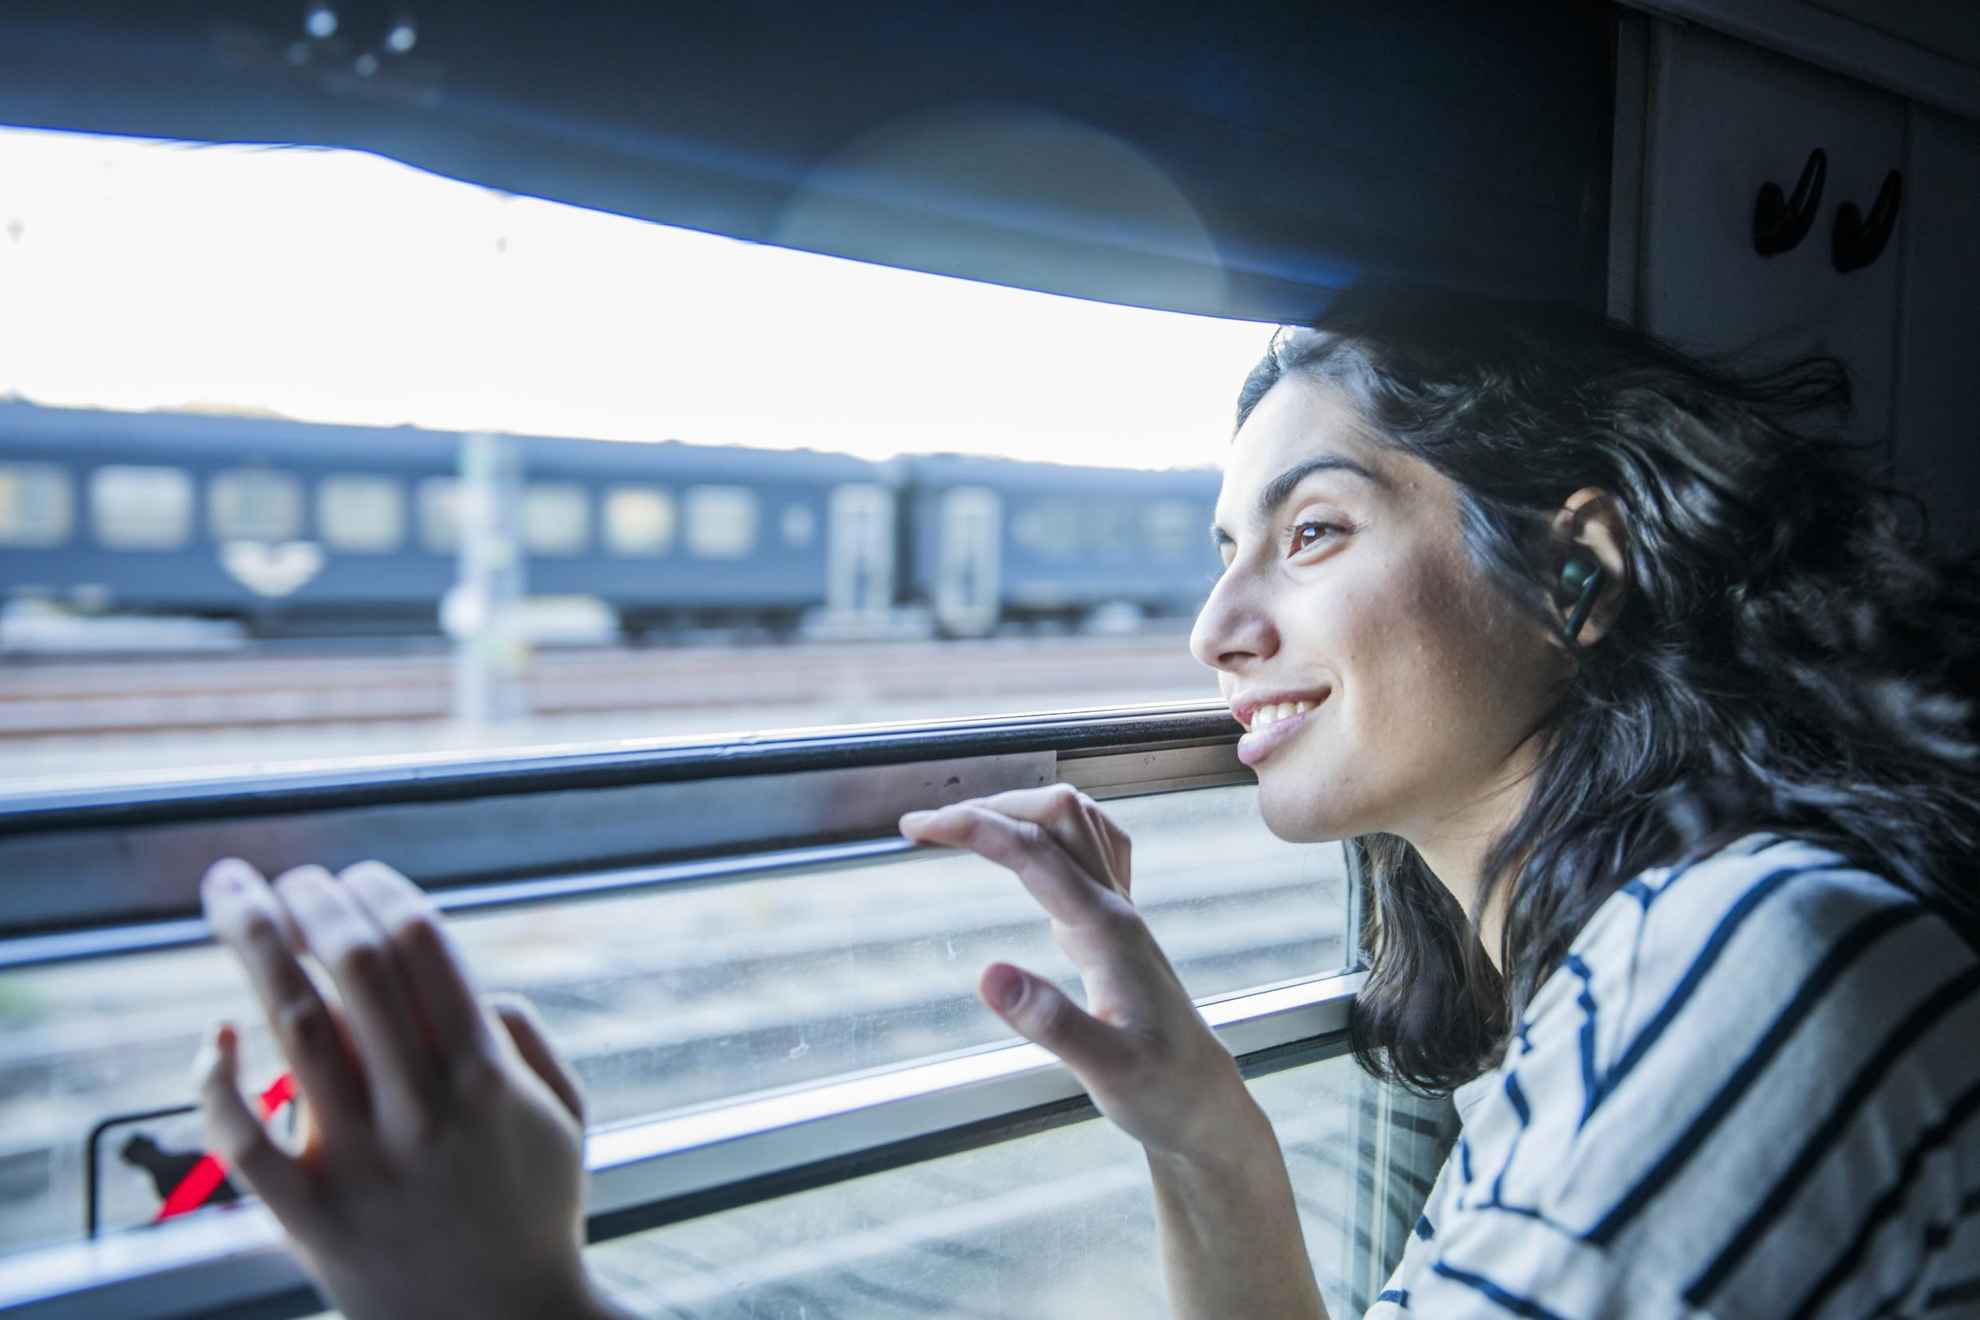 Eine Frau schaut aus dem Fenster eines Zuges, der gerade einen anderen Zug überholt.